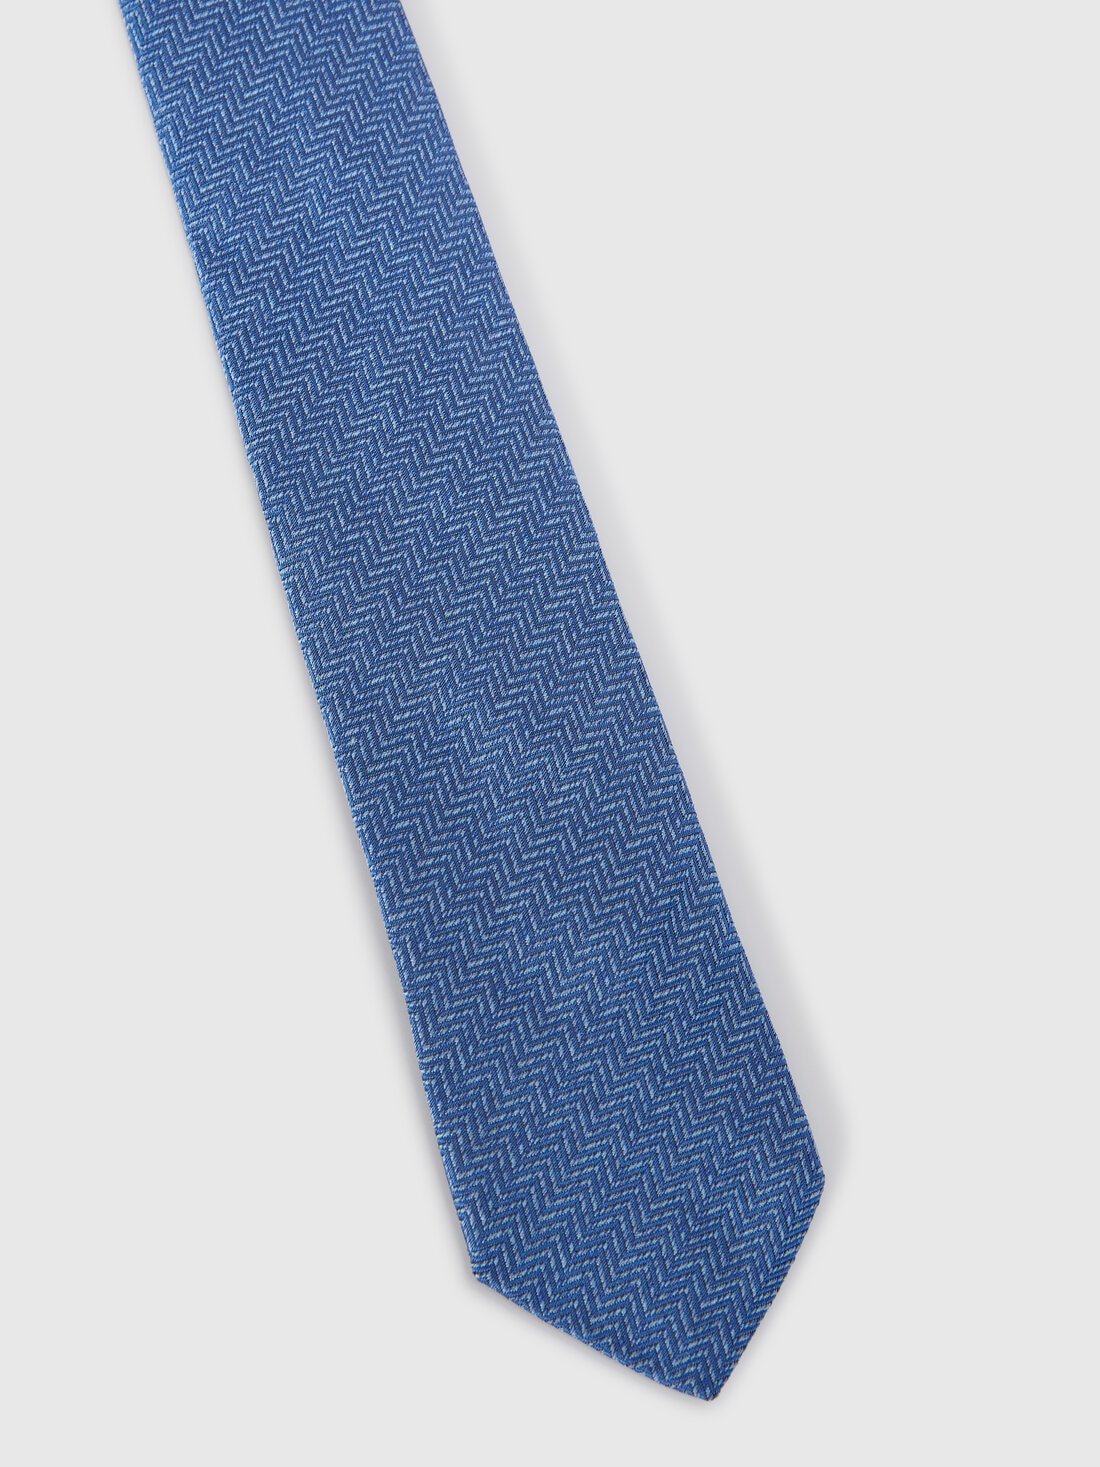 Silk chevron tie, Multicoloured  - 8053147141930 - 1